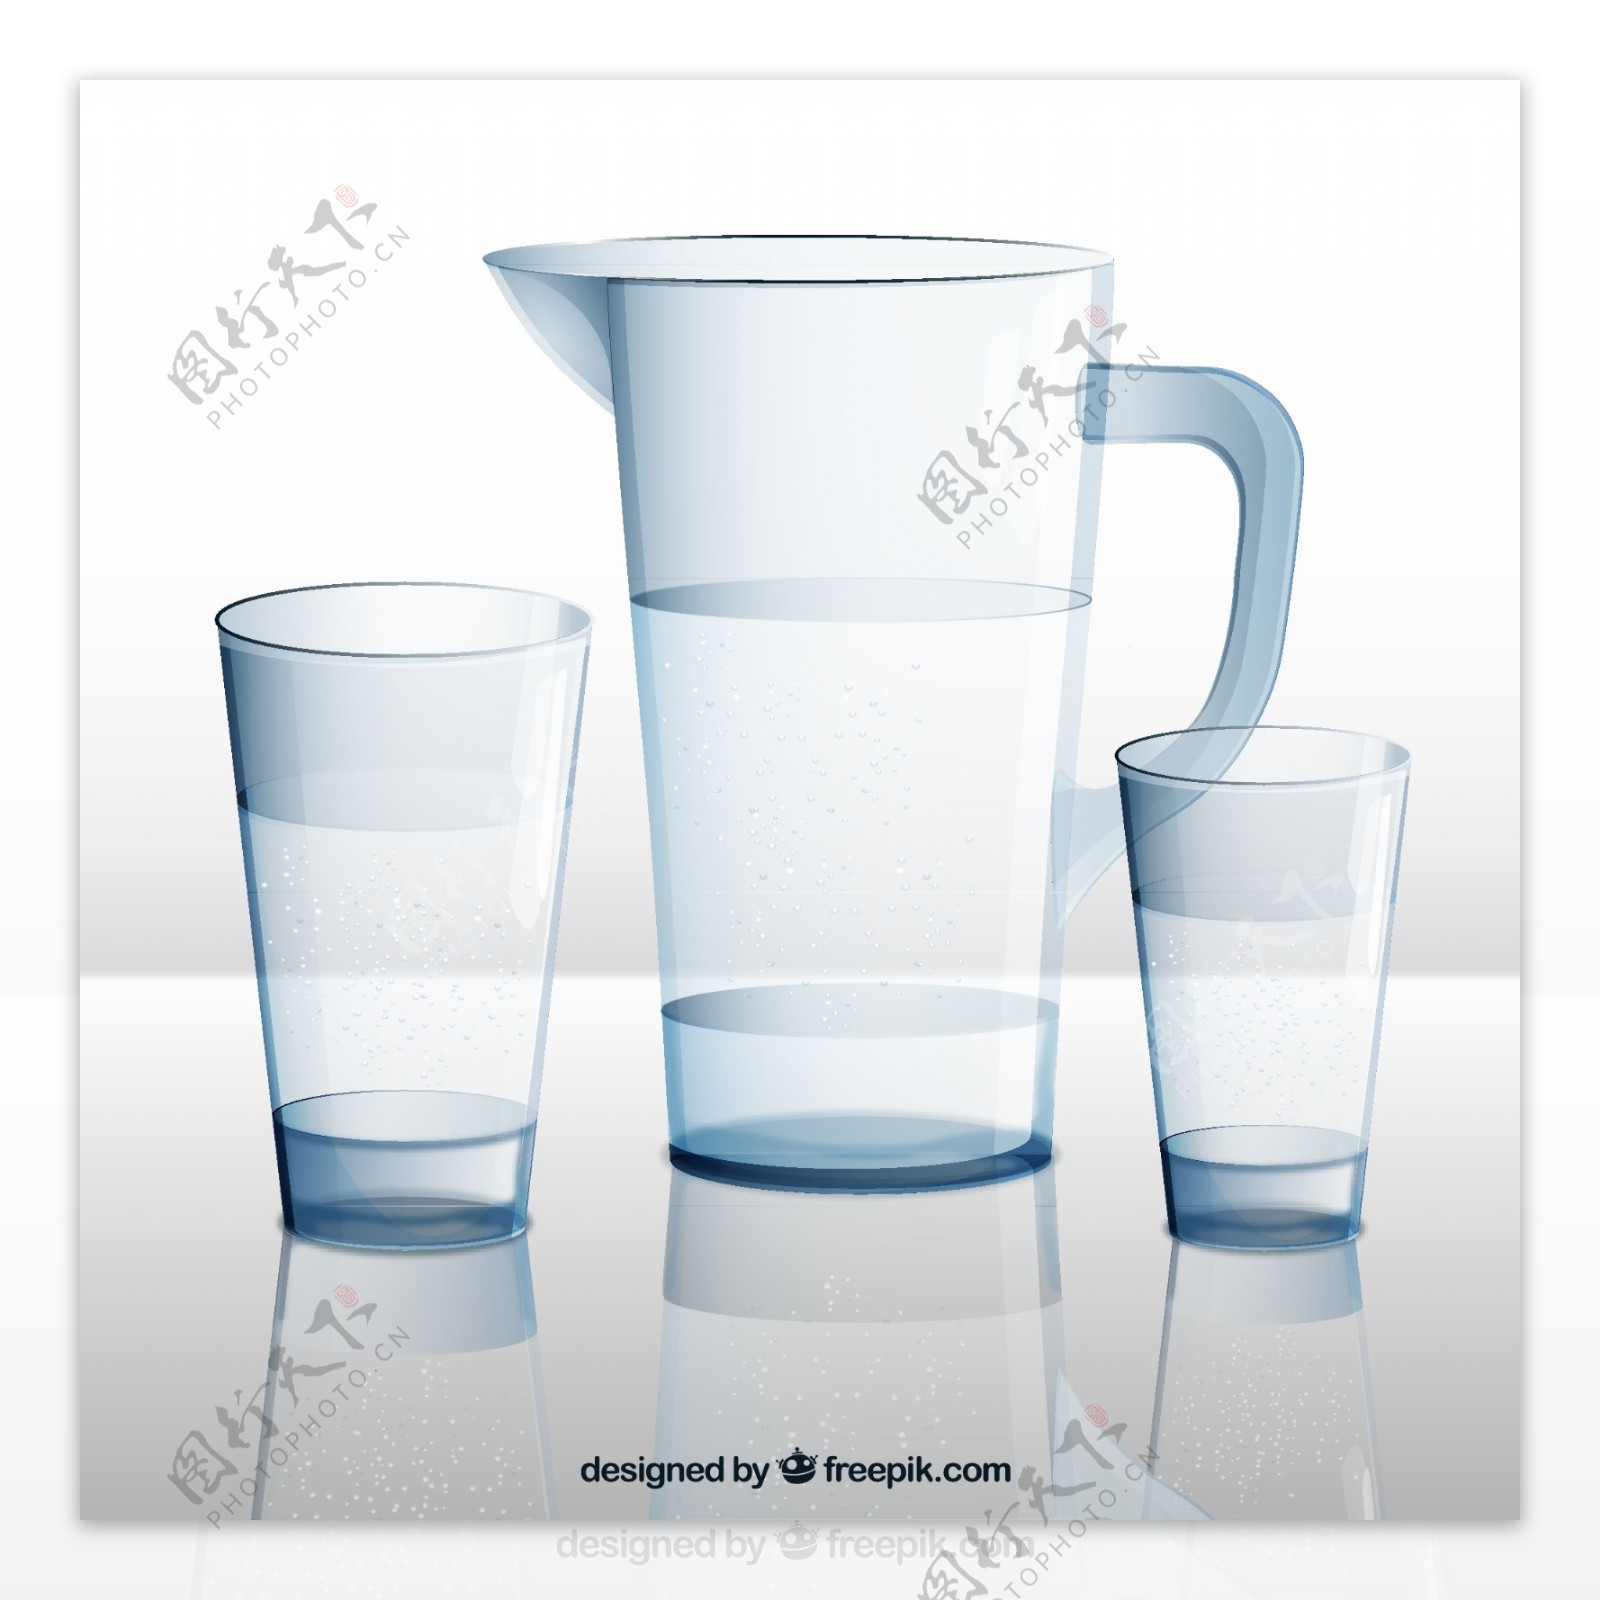 水壶和杯子设计矢量素材图片